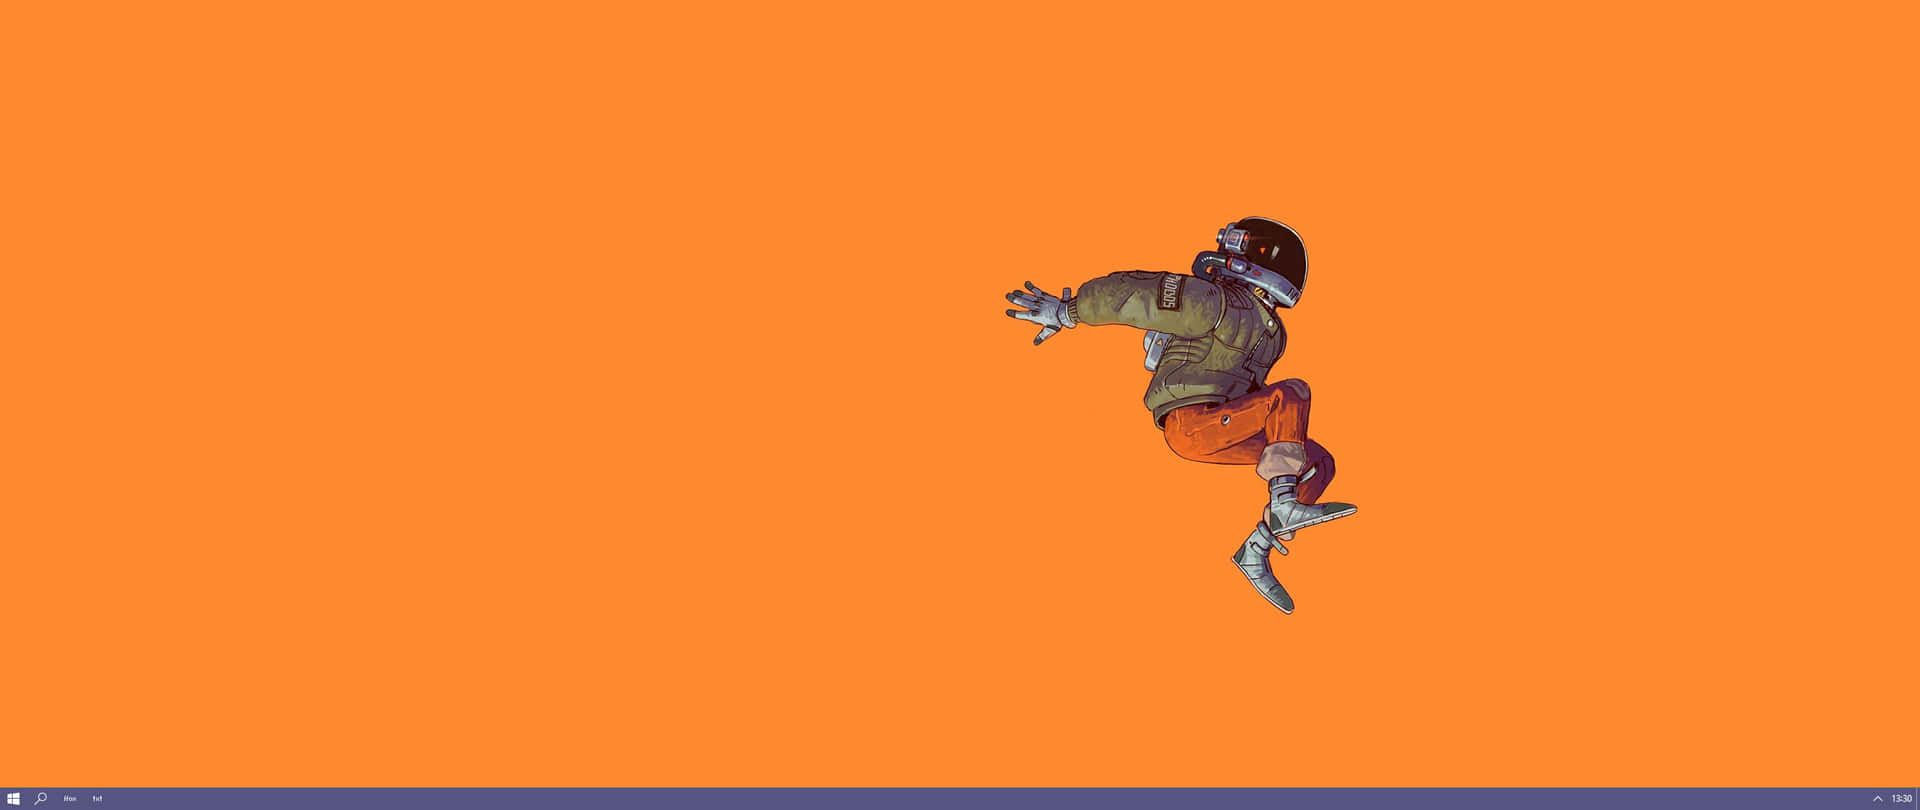 Einskateboarder Springt Auf Einem Orangefarbenen Hintergrund. Wallpaper